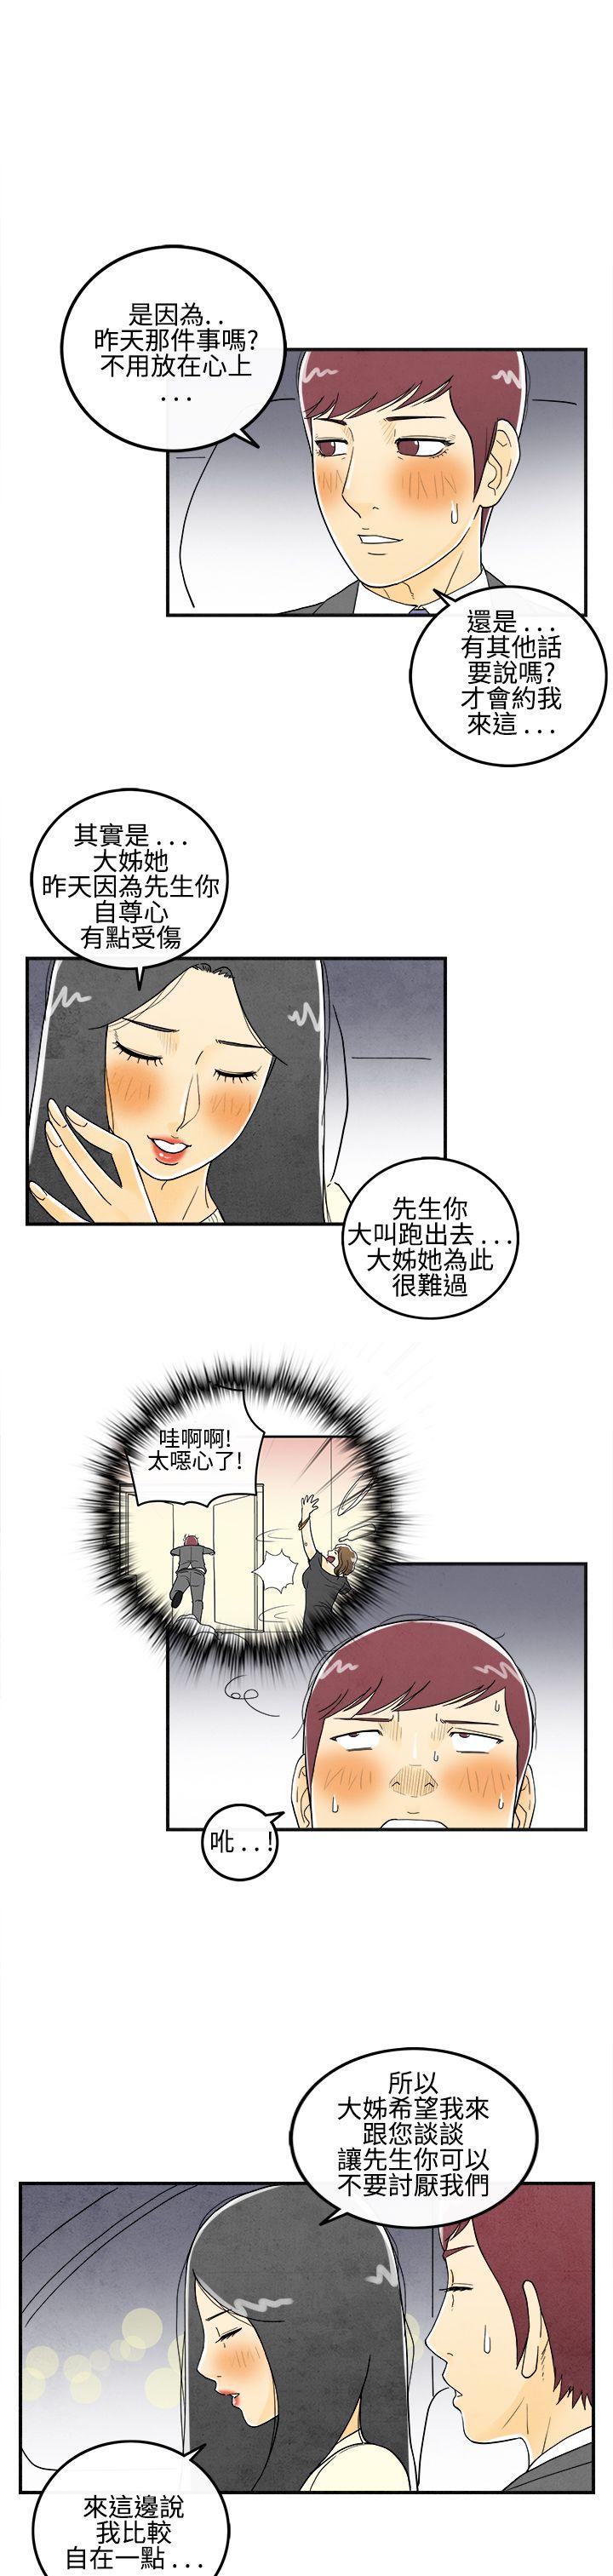 韩国污漫画 離婚報告書(完結) 第9话-喜爱变性人的老公 5